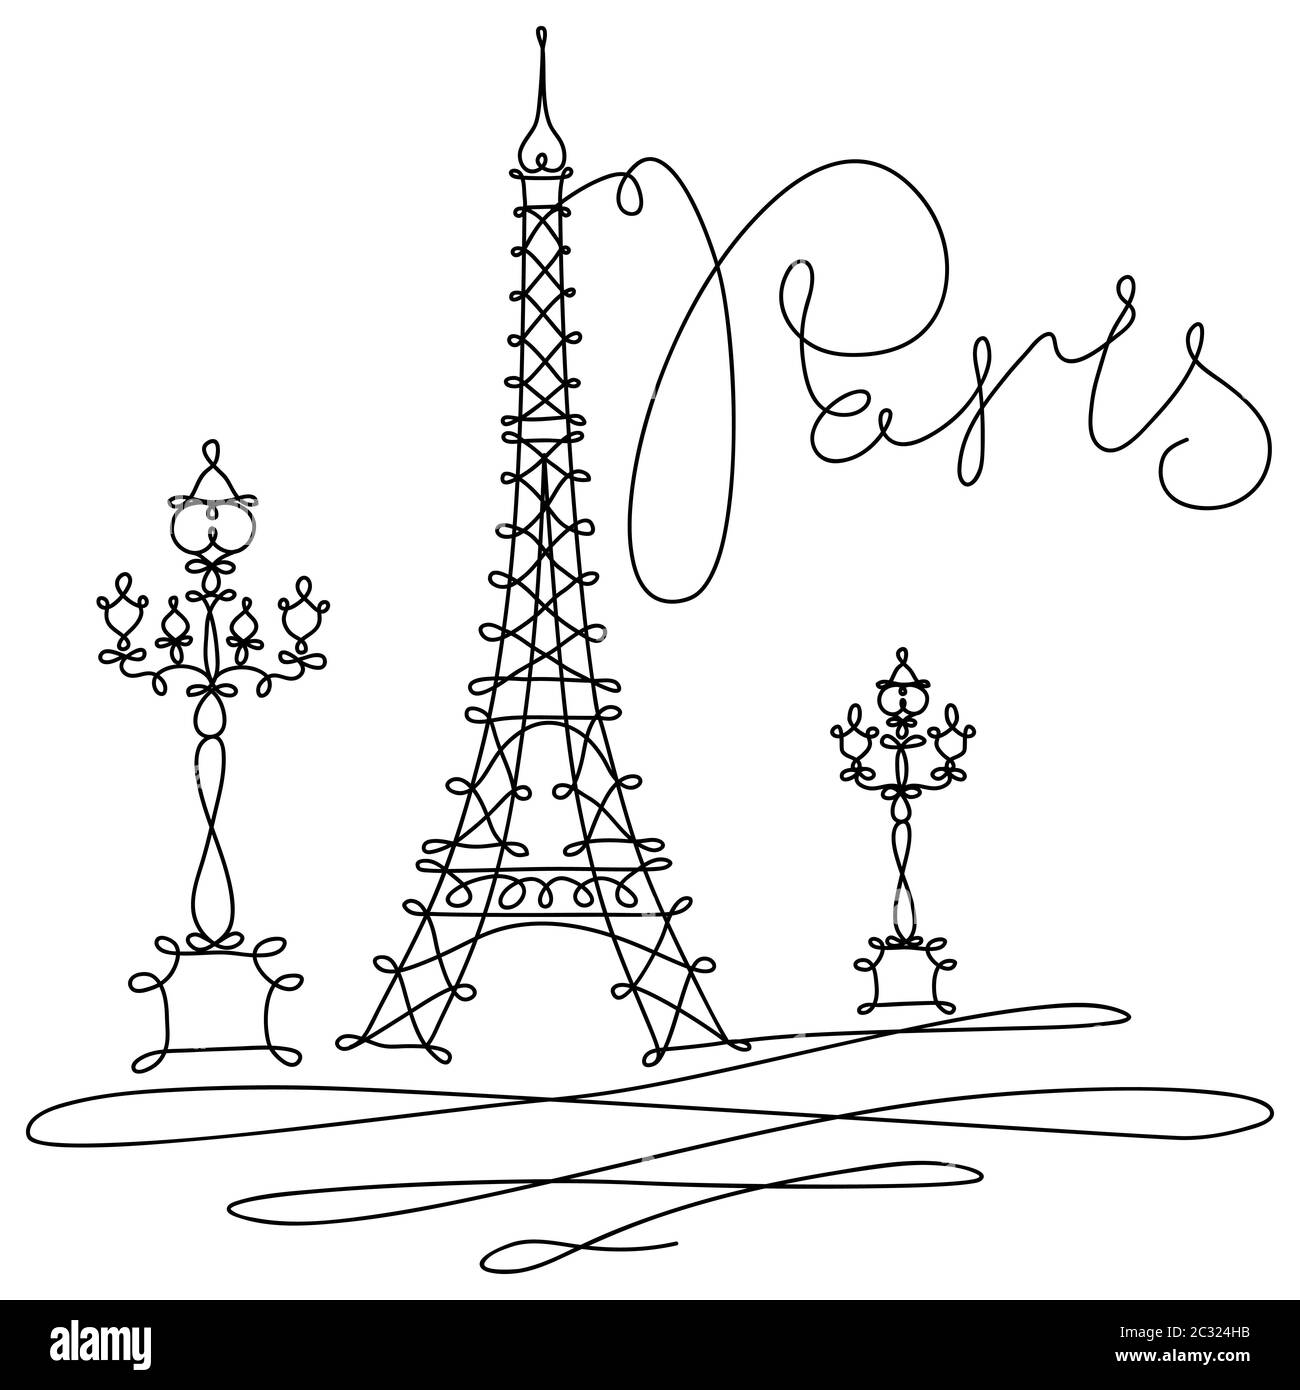 La Tour Eiffel - Paris Illustration